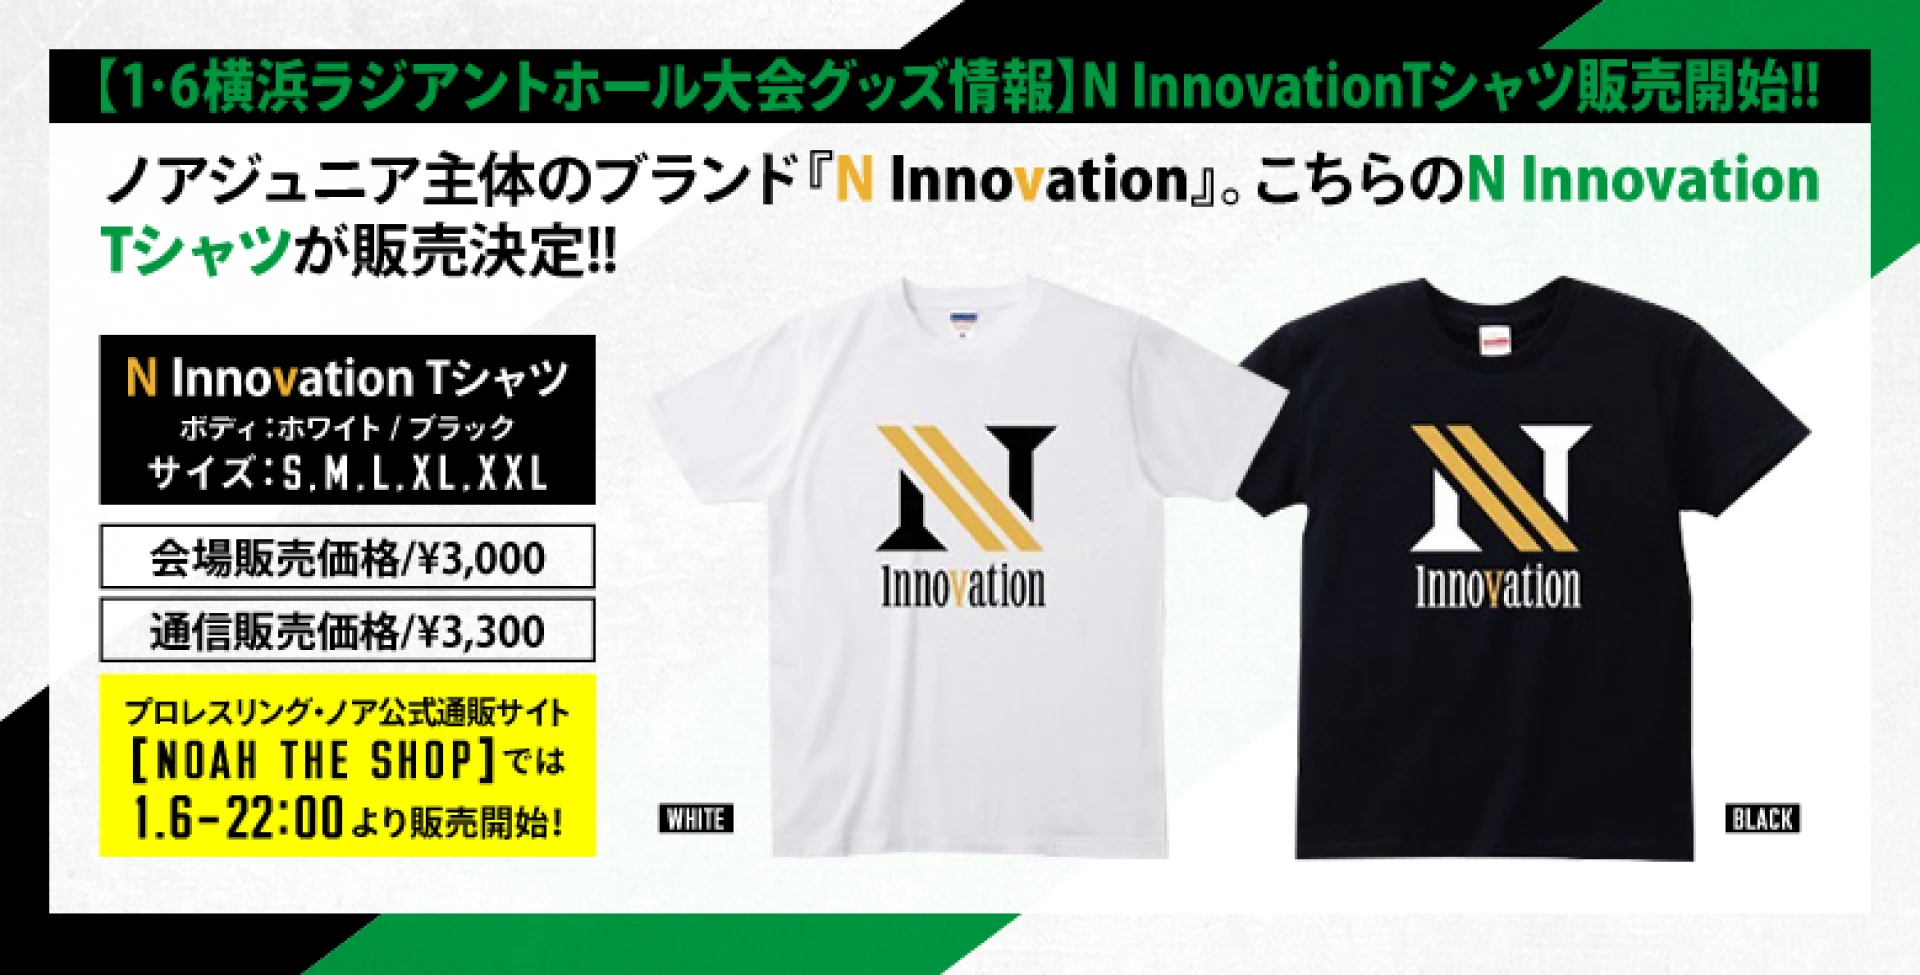 【1･6横浜ラジアントホール大会グッズ情報】N InnovationTシャツ販売開始!!